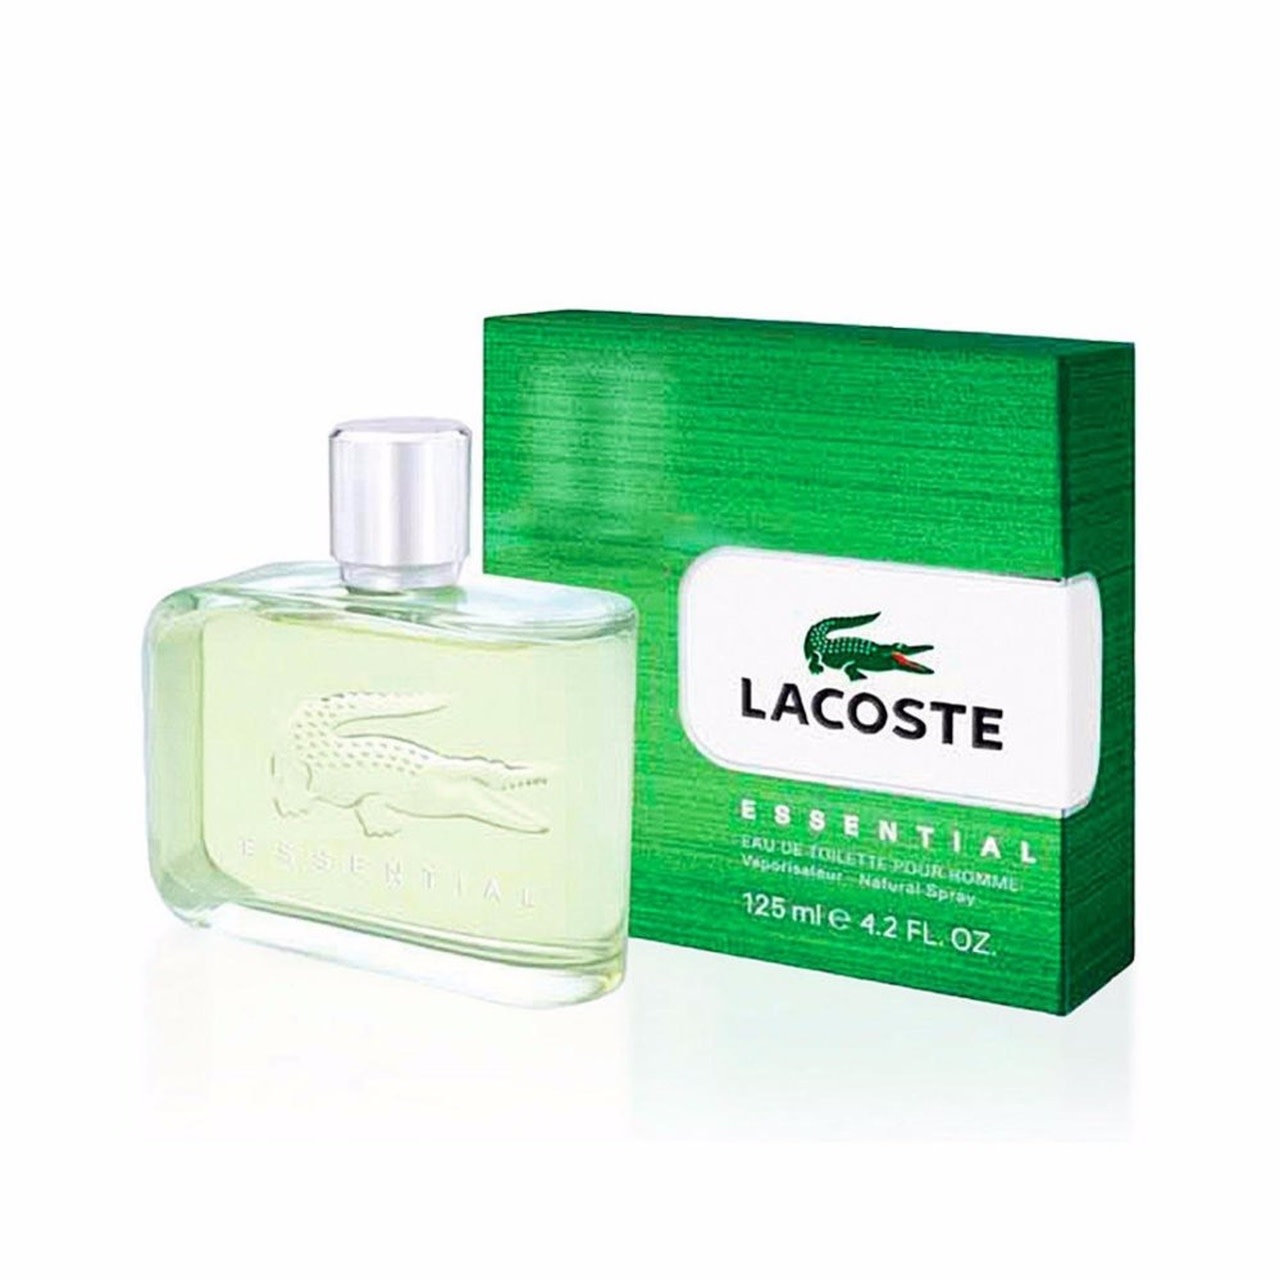 Lacoste Essential Men Toilette - Le Parfumier Perfume Store